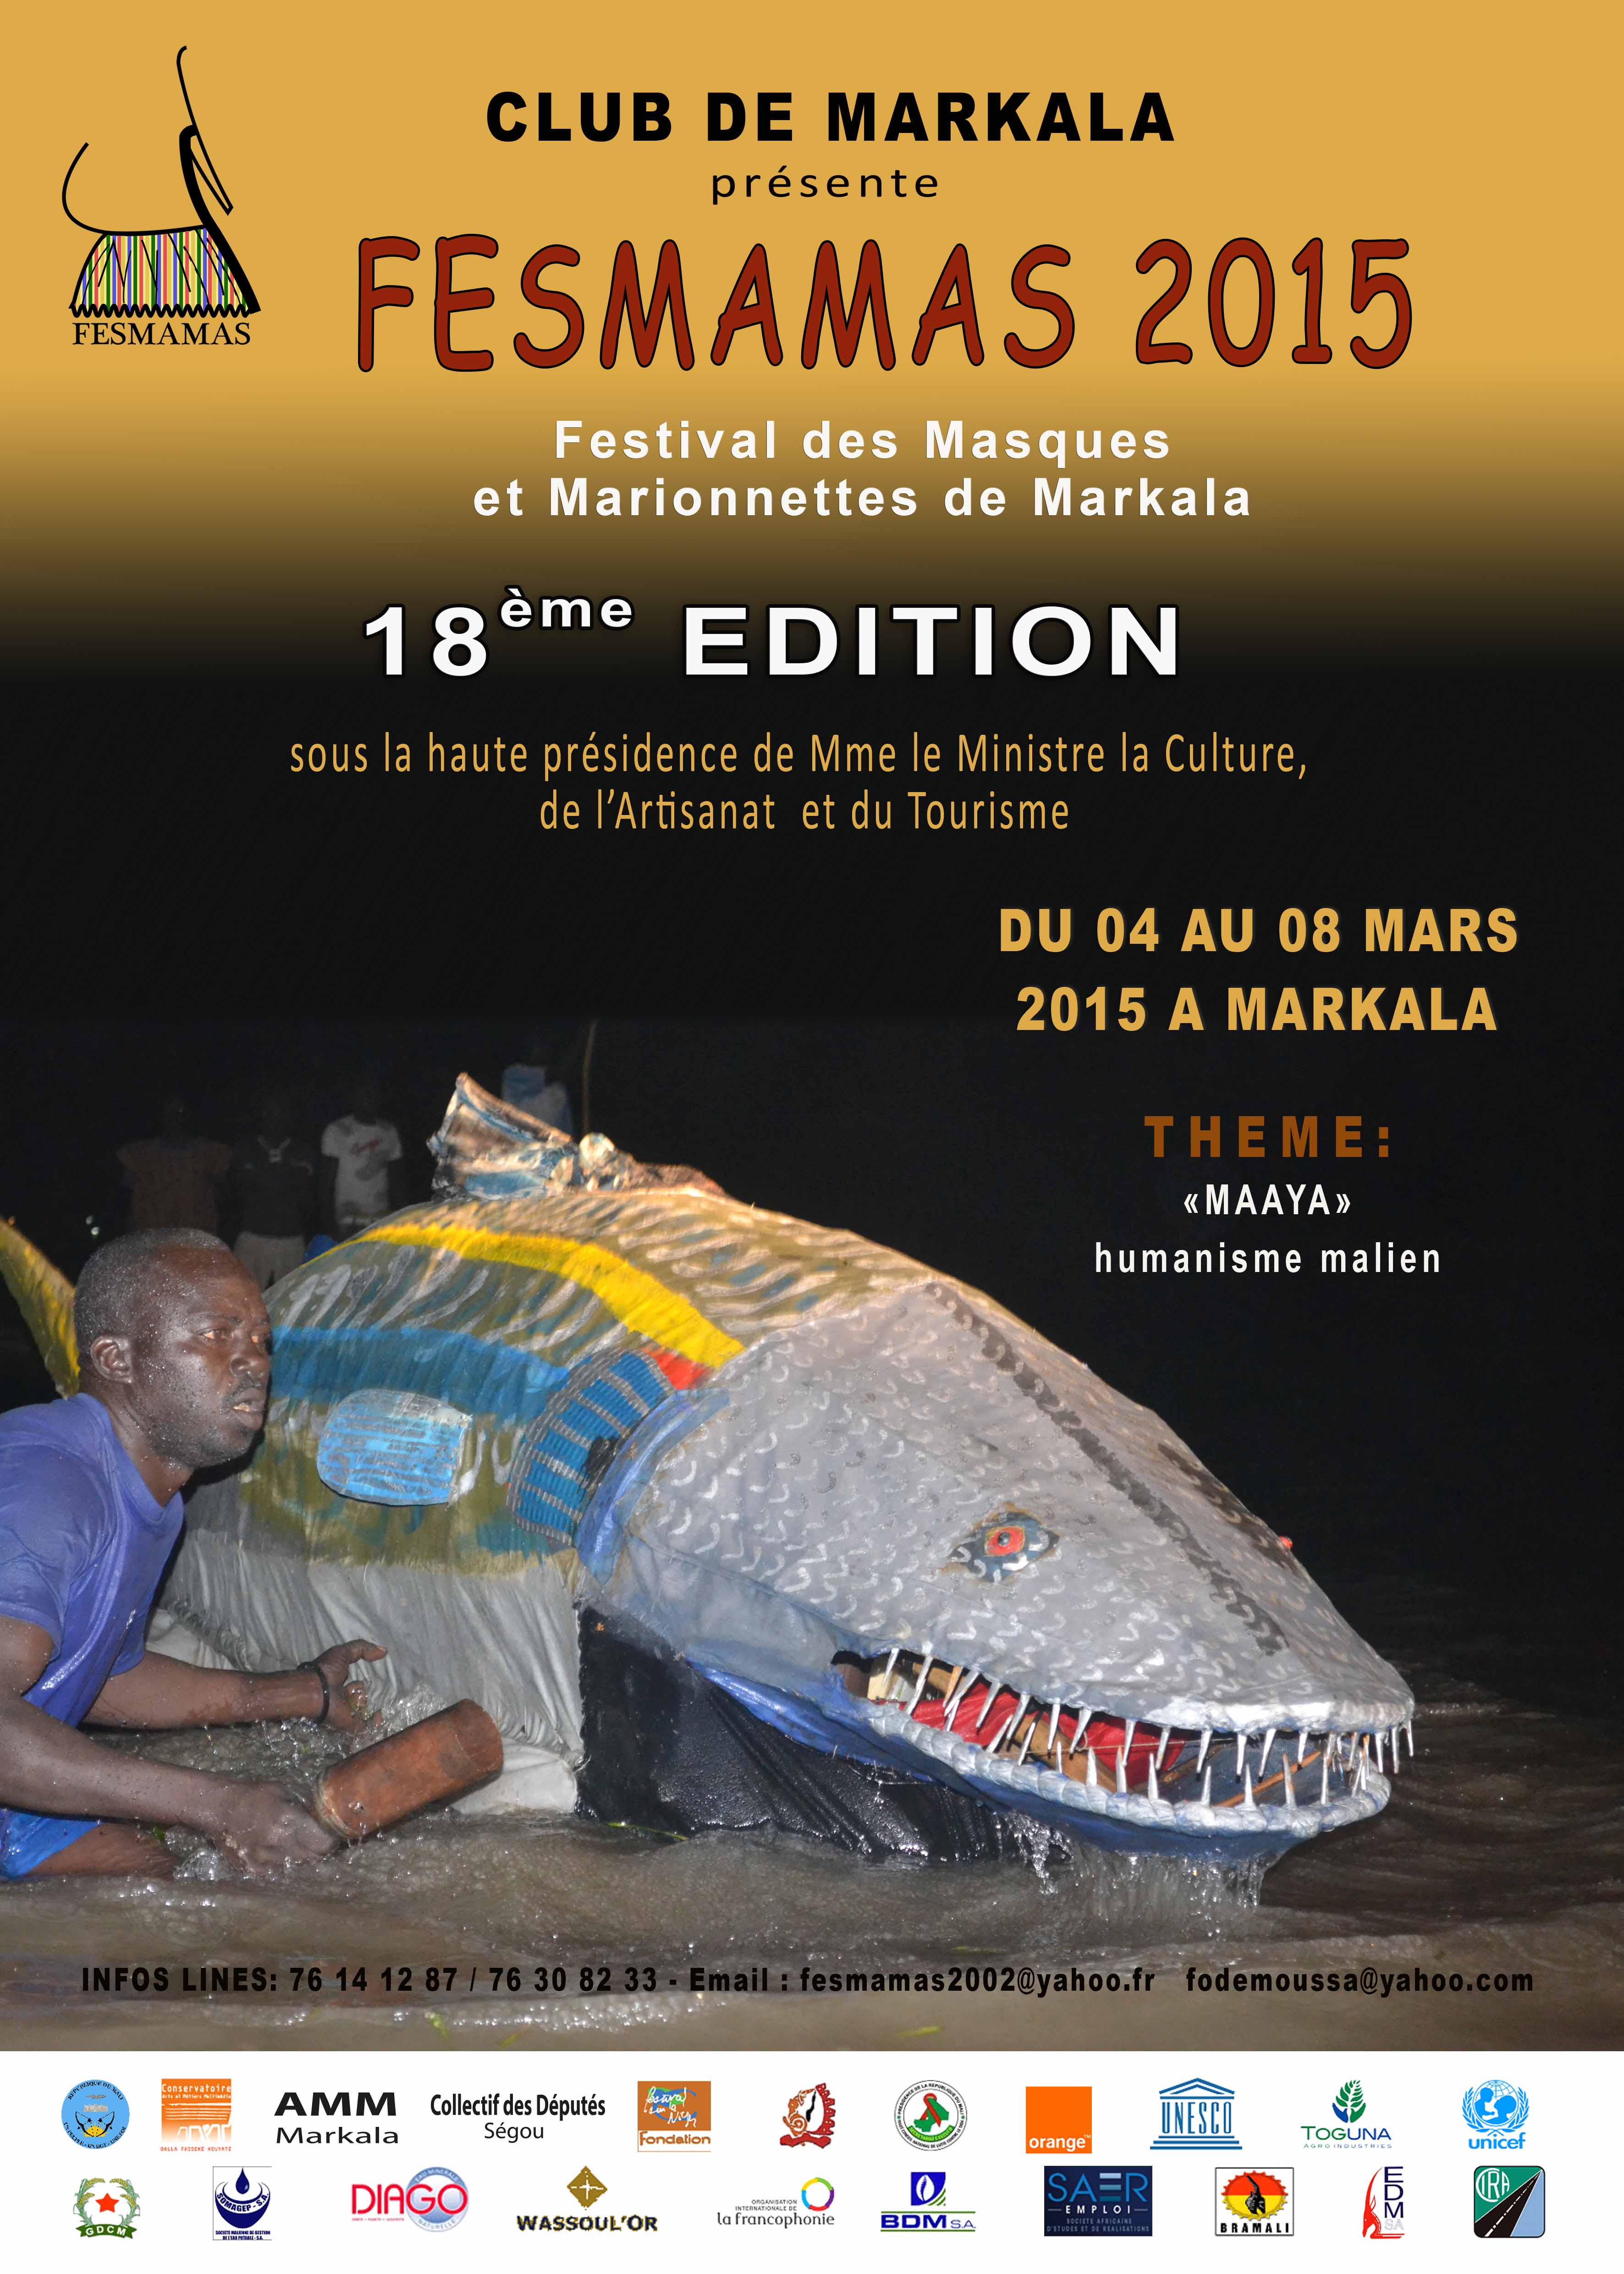 FESMAMAS_2015 - Crédit : Conservatoire des Arts et Métiers Multimédia de Bamako